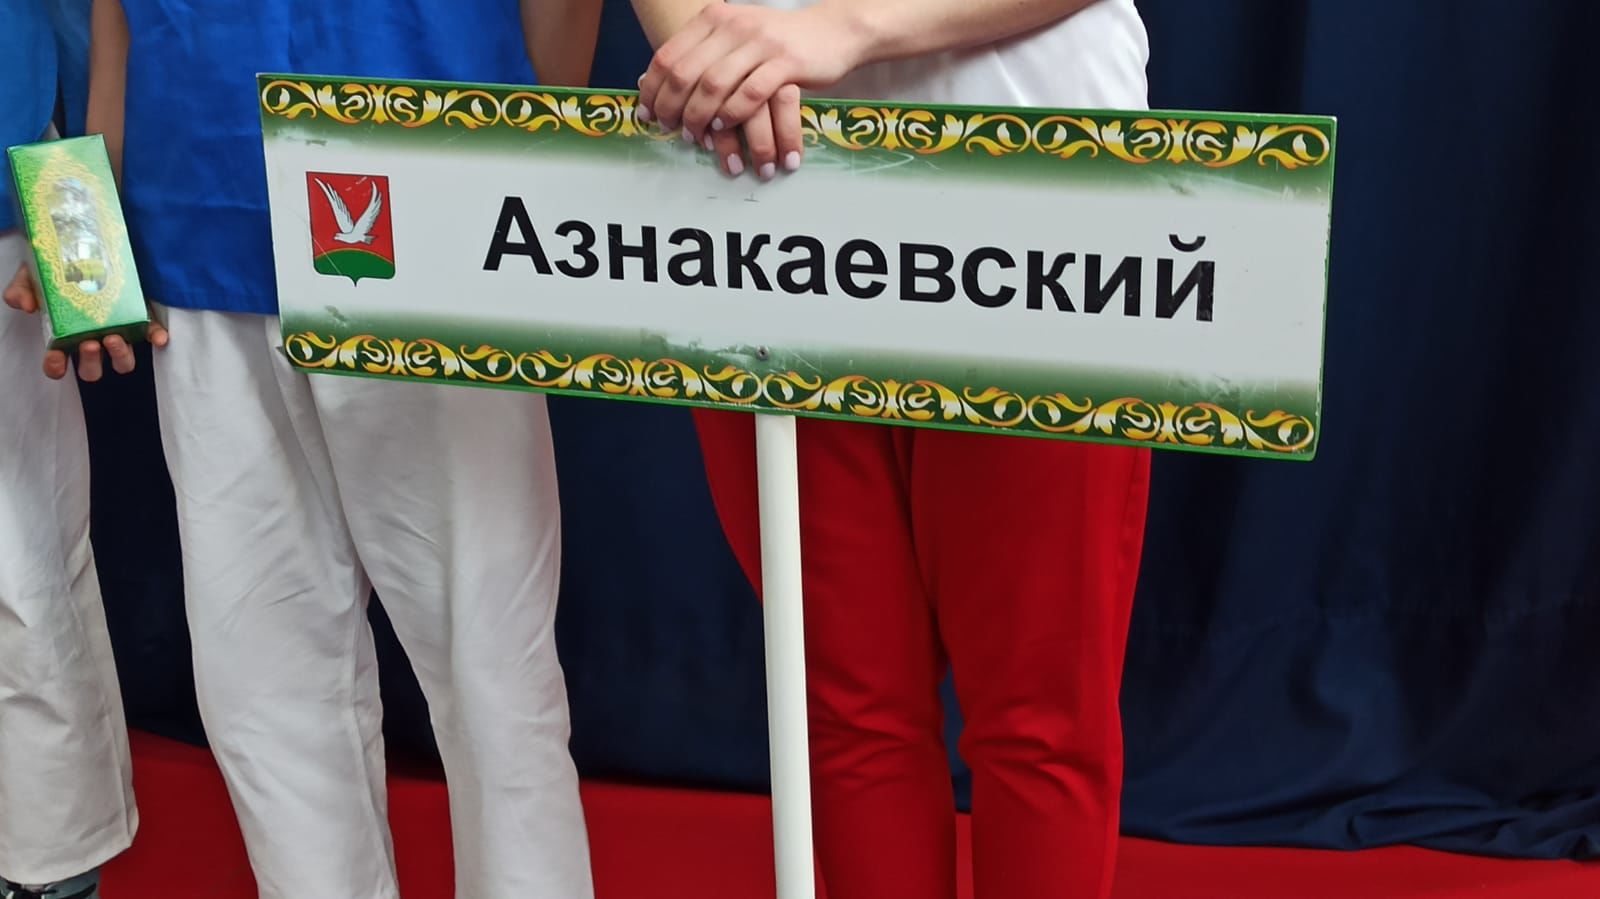 Азнакайда билбау көрәше буенча Татарстан Республикасы беренчелеге уза